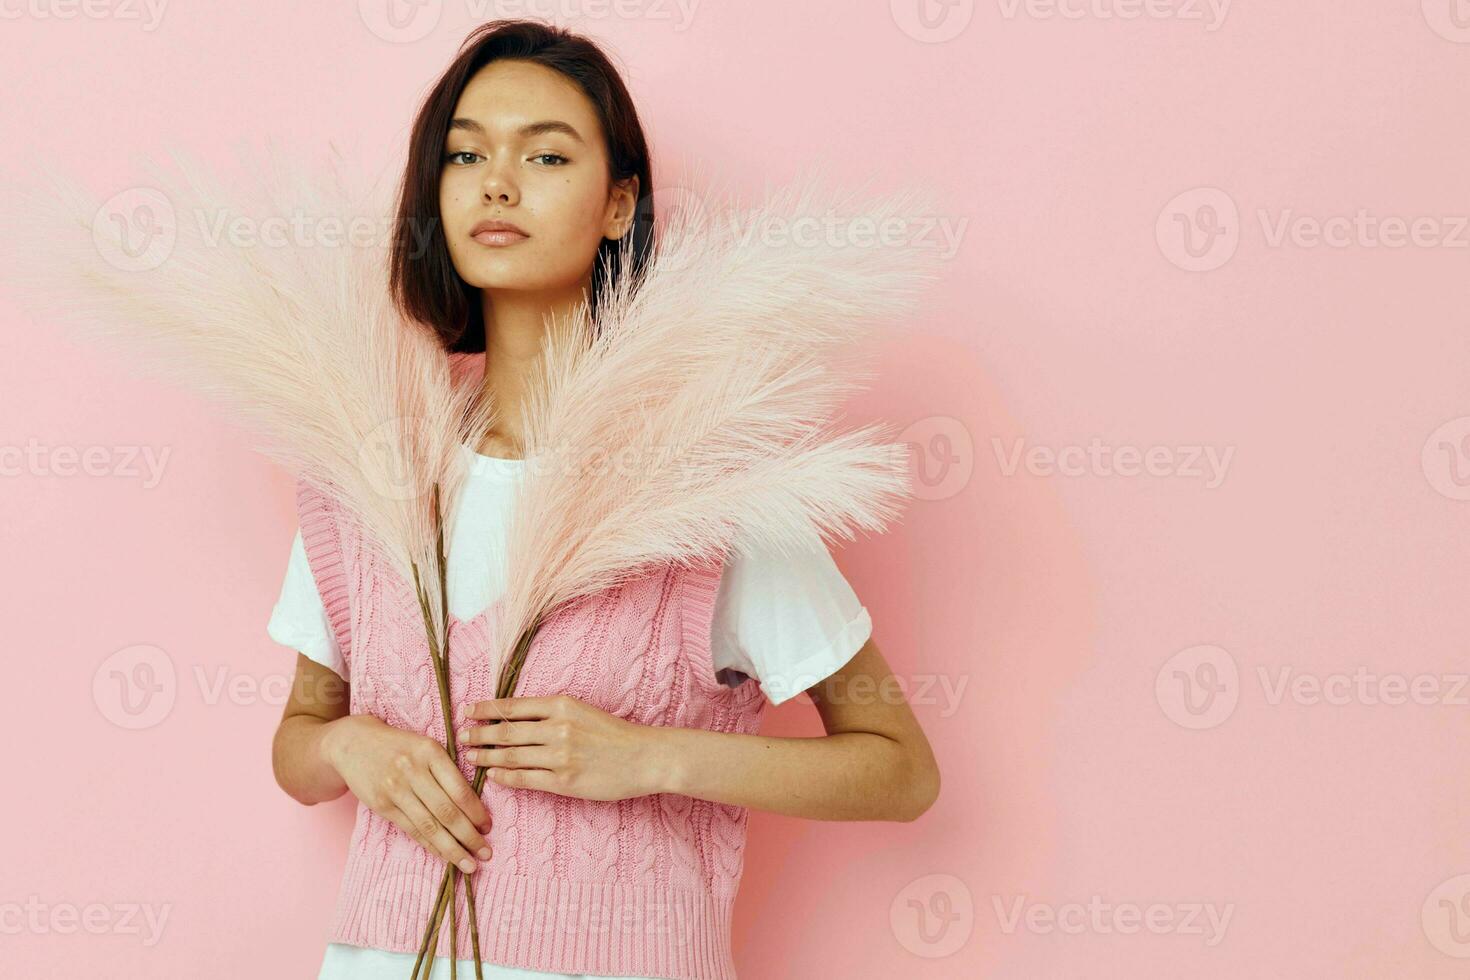 optimista joven mujer rosado plumas en mano posando casual vestir estilo de  vida inalterado 25026833 Foto de stock en Vecteezy